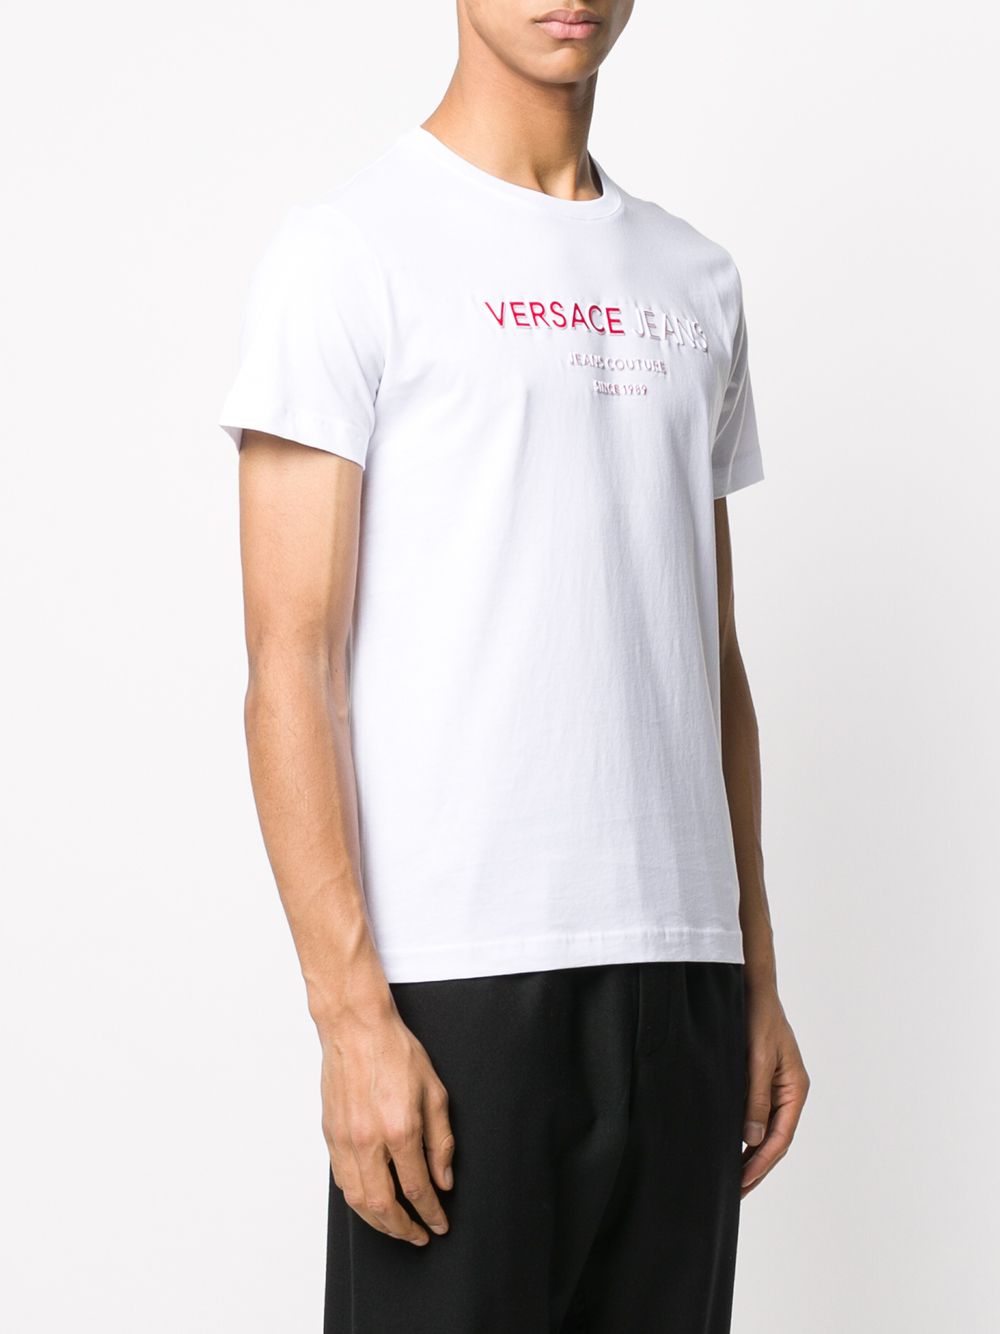 фото Versace jeans футболка с логотипом